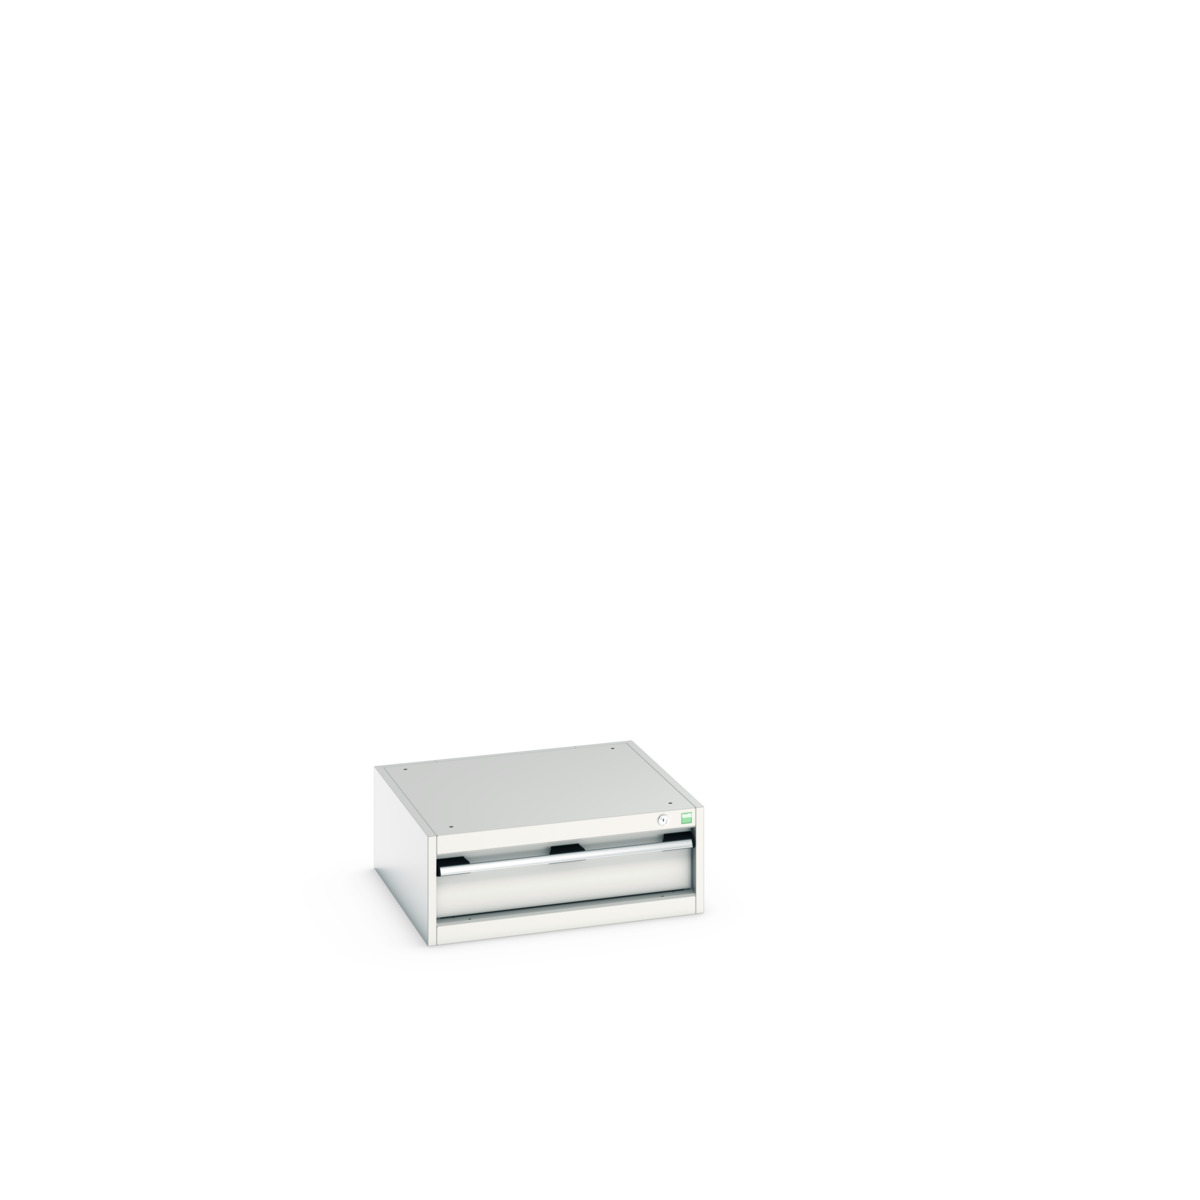 40019001.16V - cubio drawer cabinet